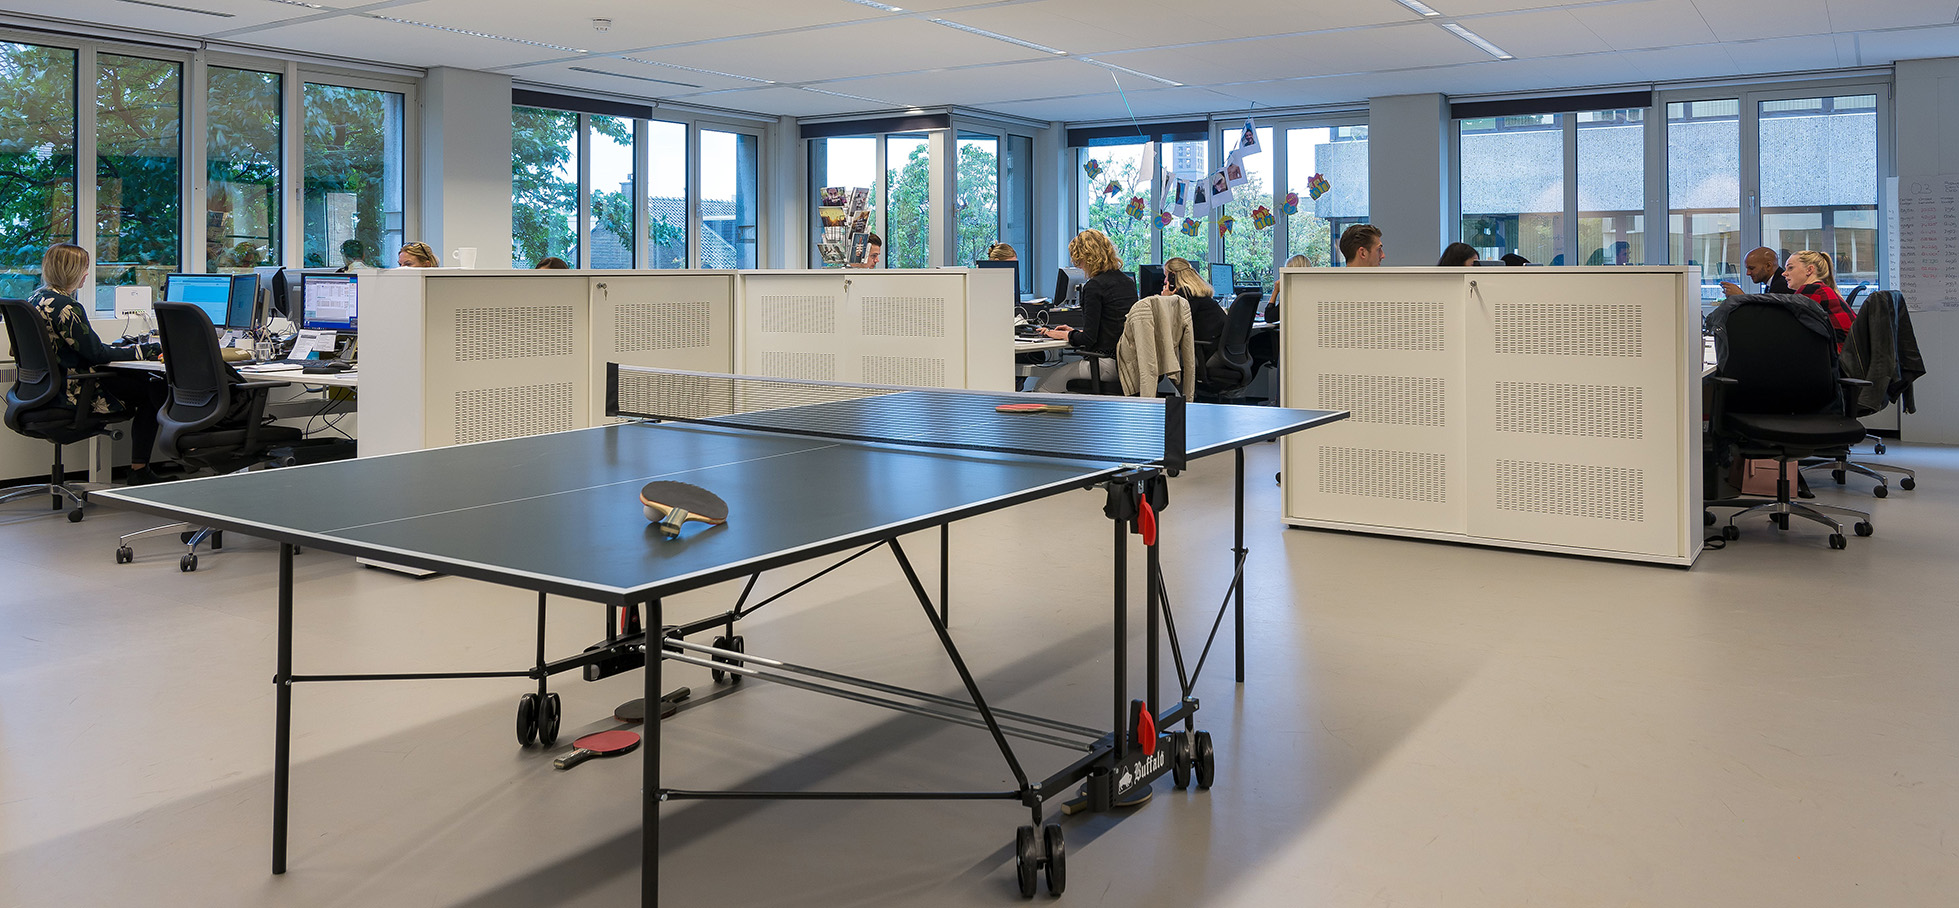 Tischtennis-Platte im Büro